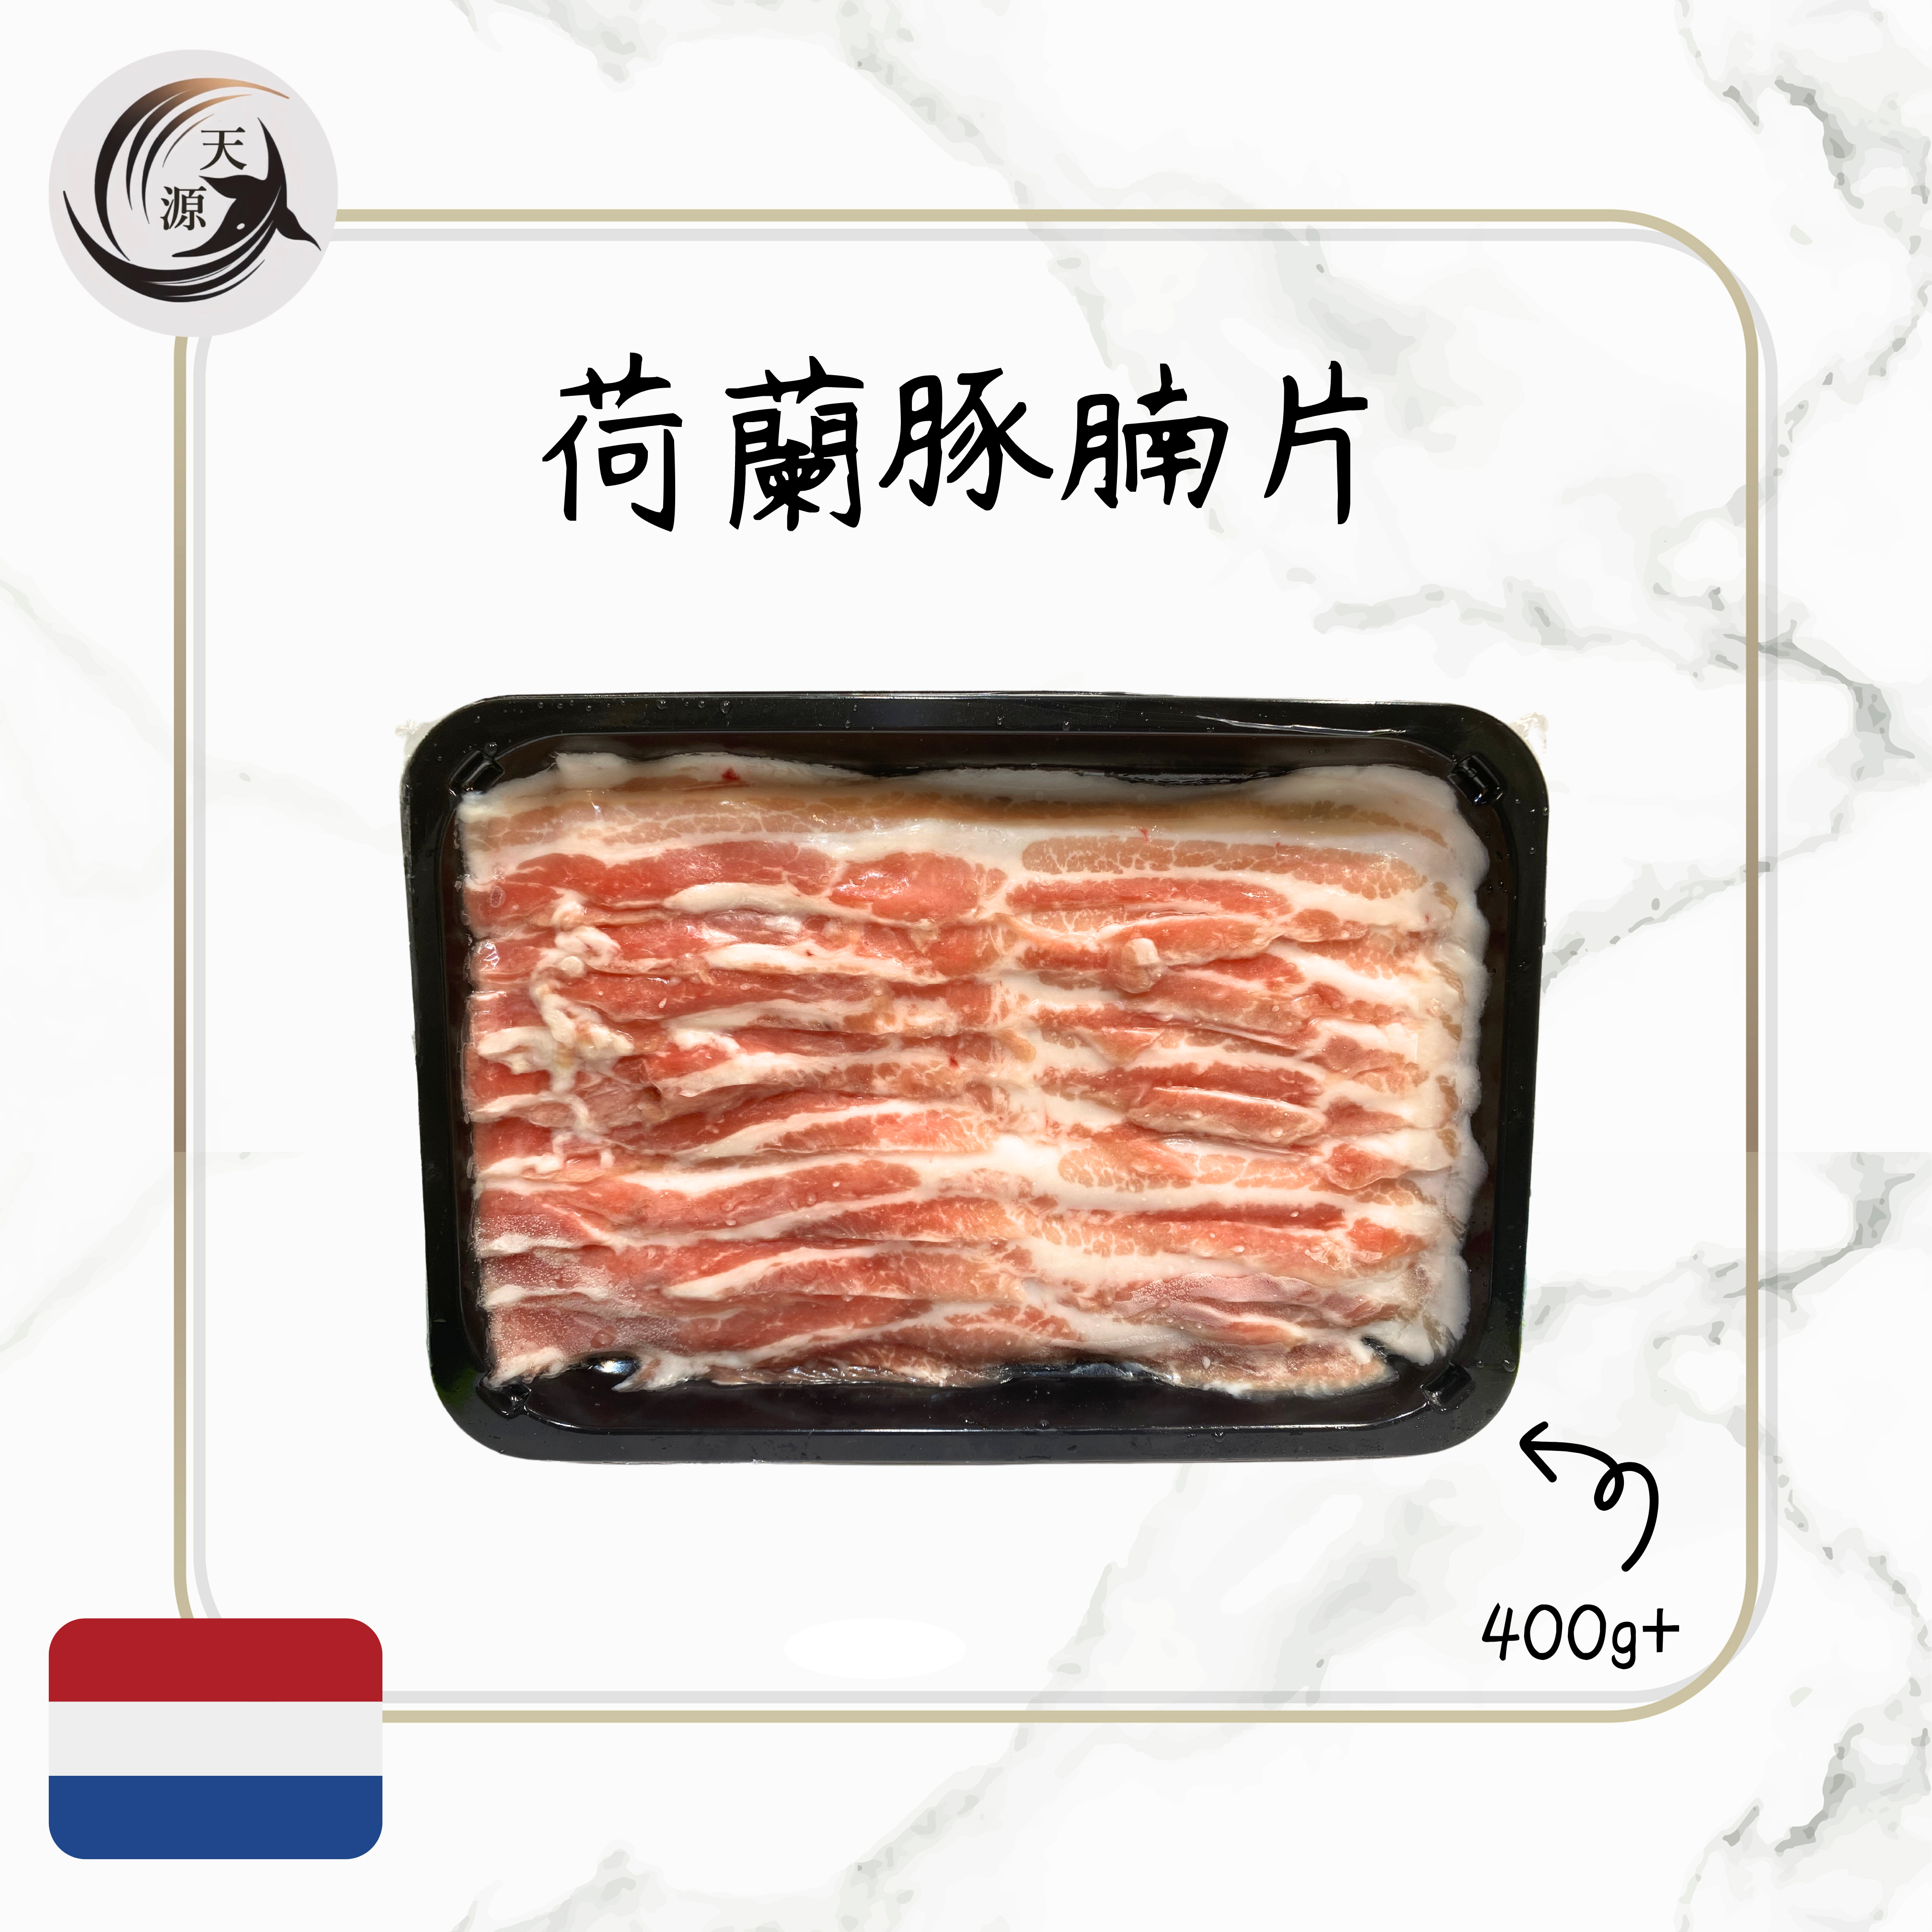 荷蘭豚腩片 400g+